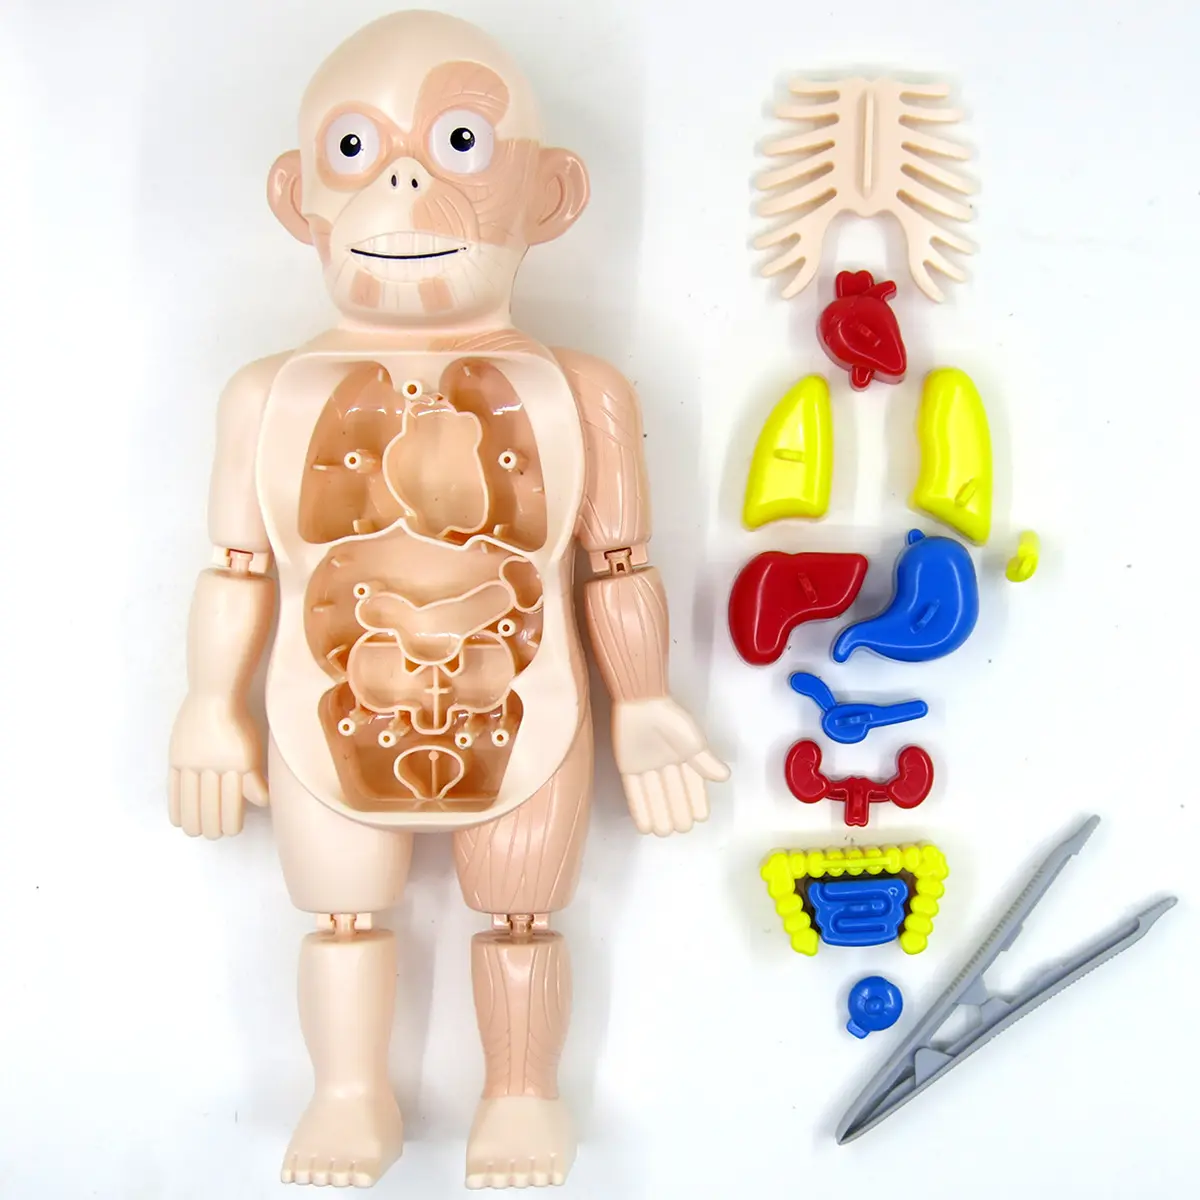 Modelo de órgano de cuerpo humano de ciencia y educación para niños, juguetes de educación temprana médica ensamblados DIY